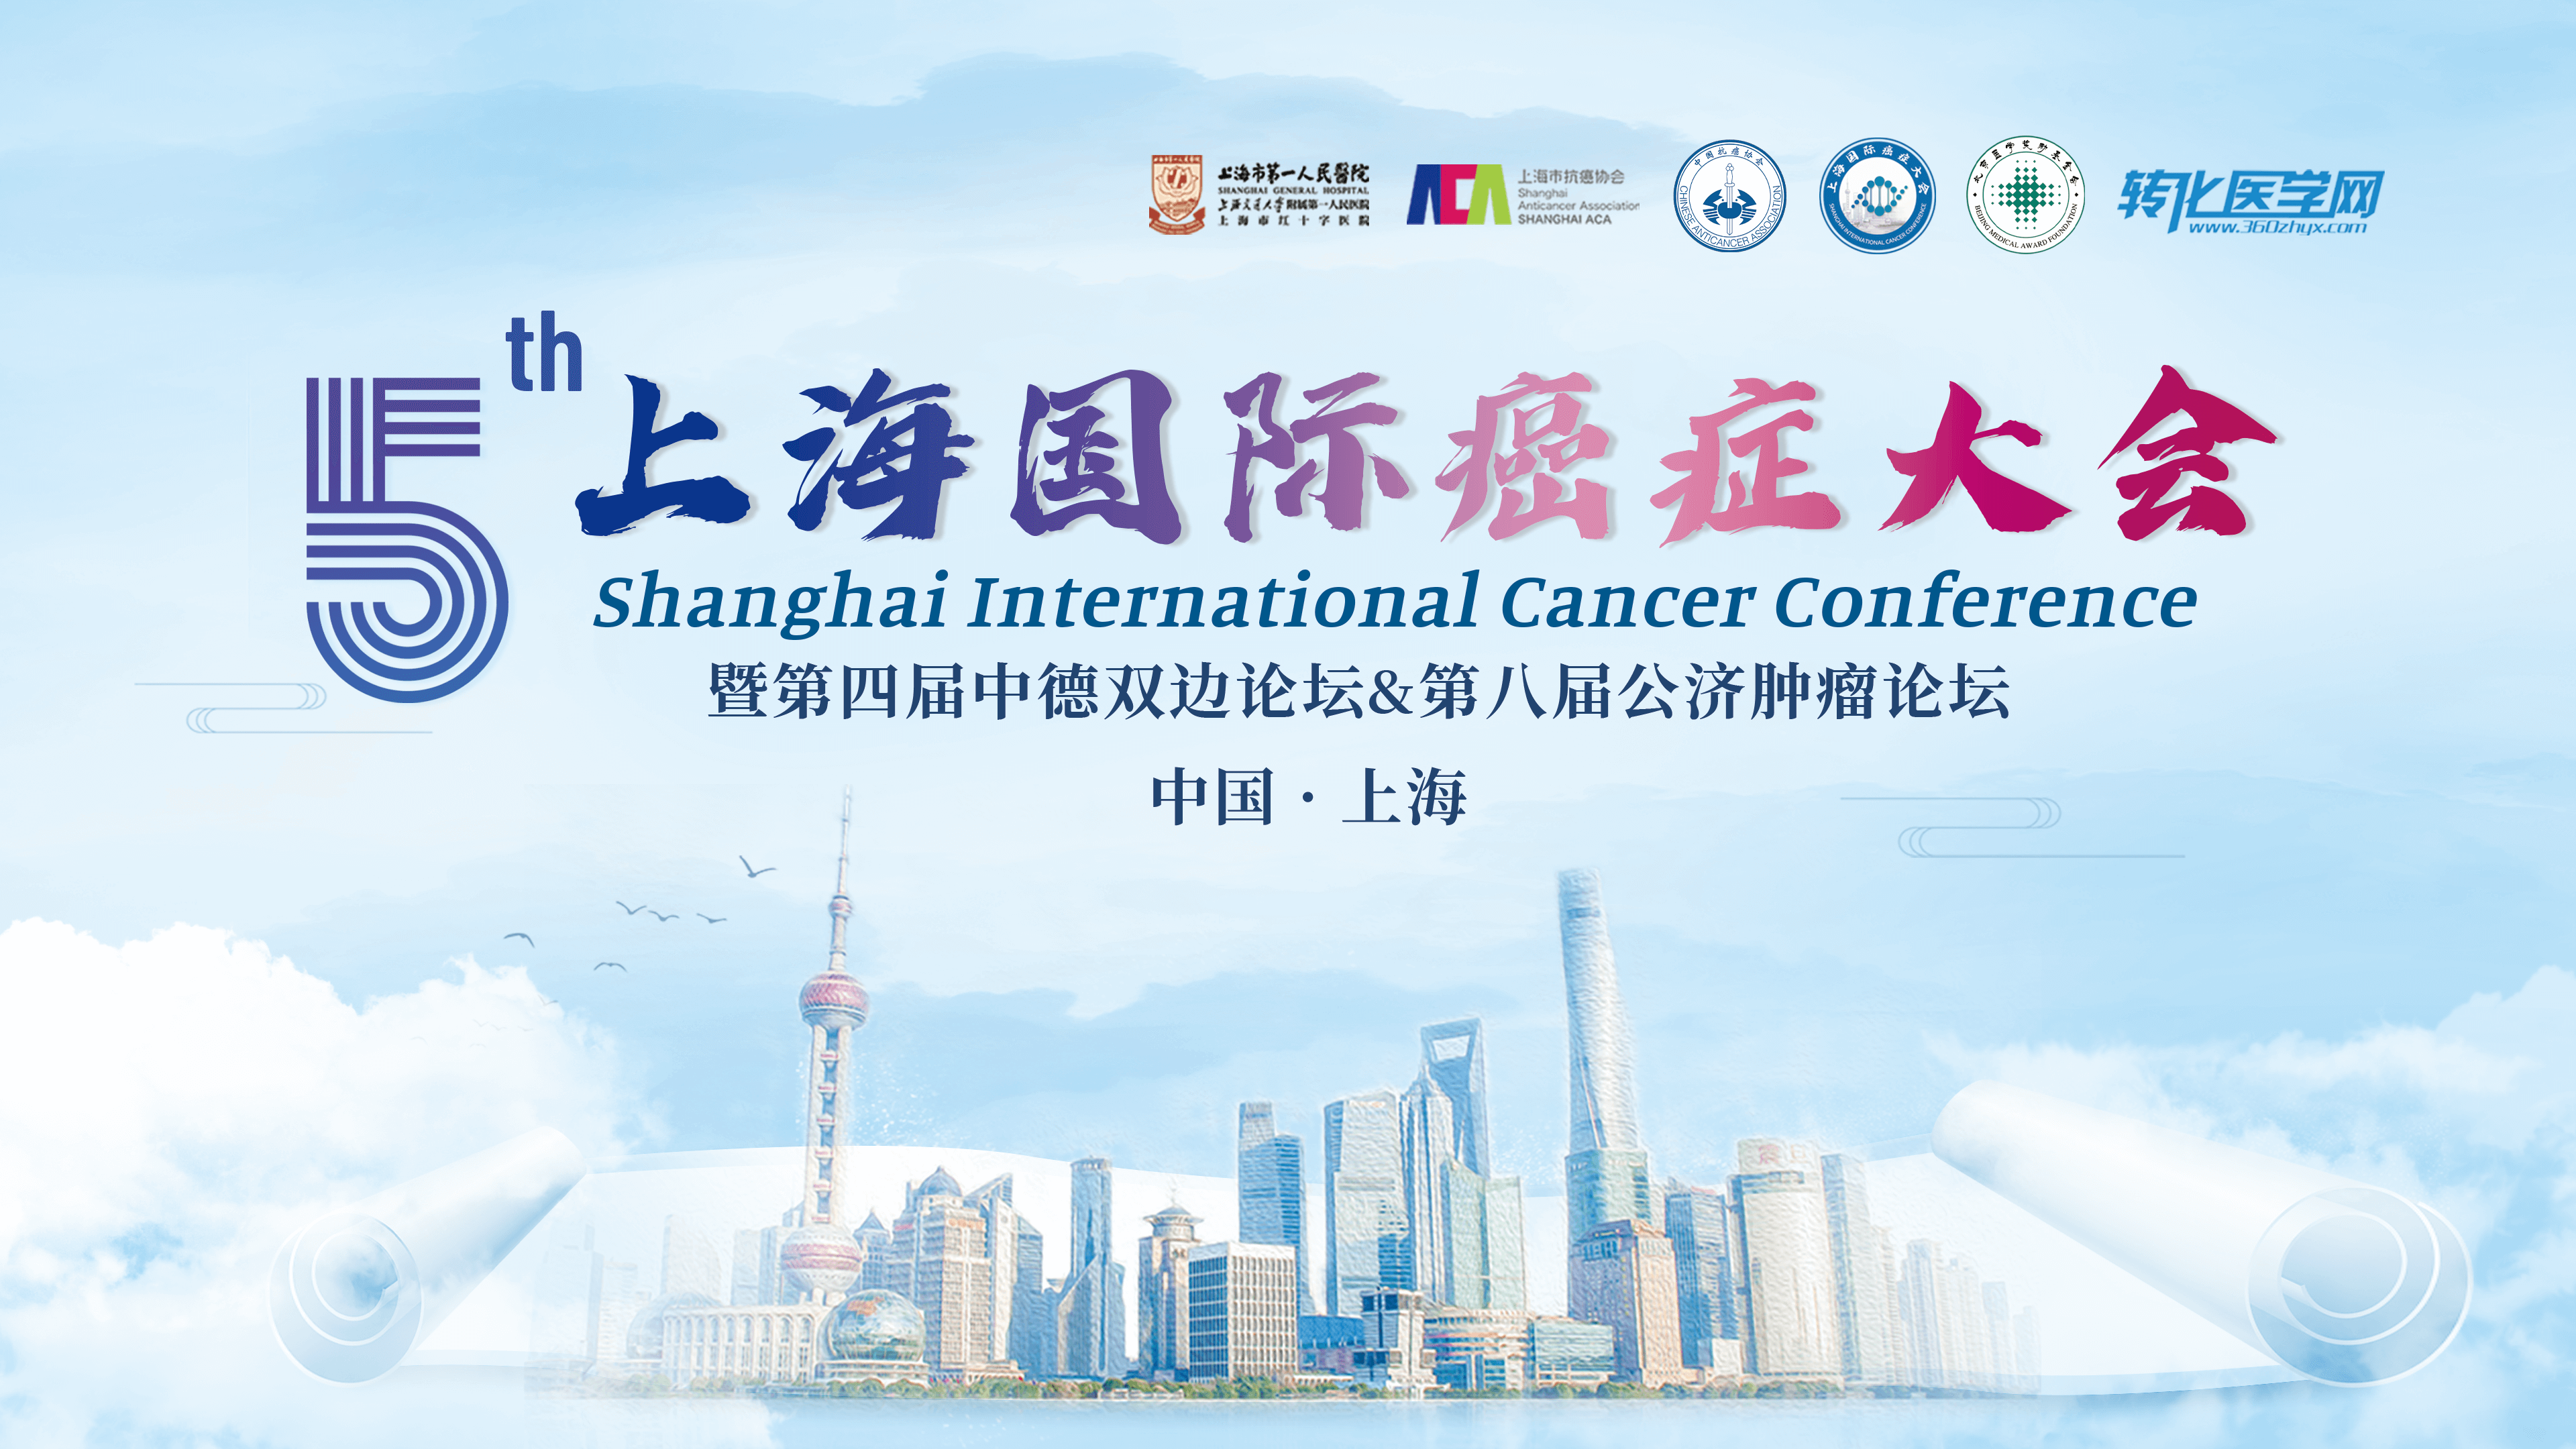 会议通知 | 豪森药业邀您共赴第五届上海国际癌症大会